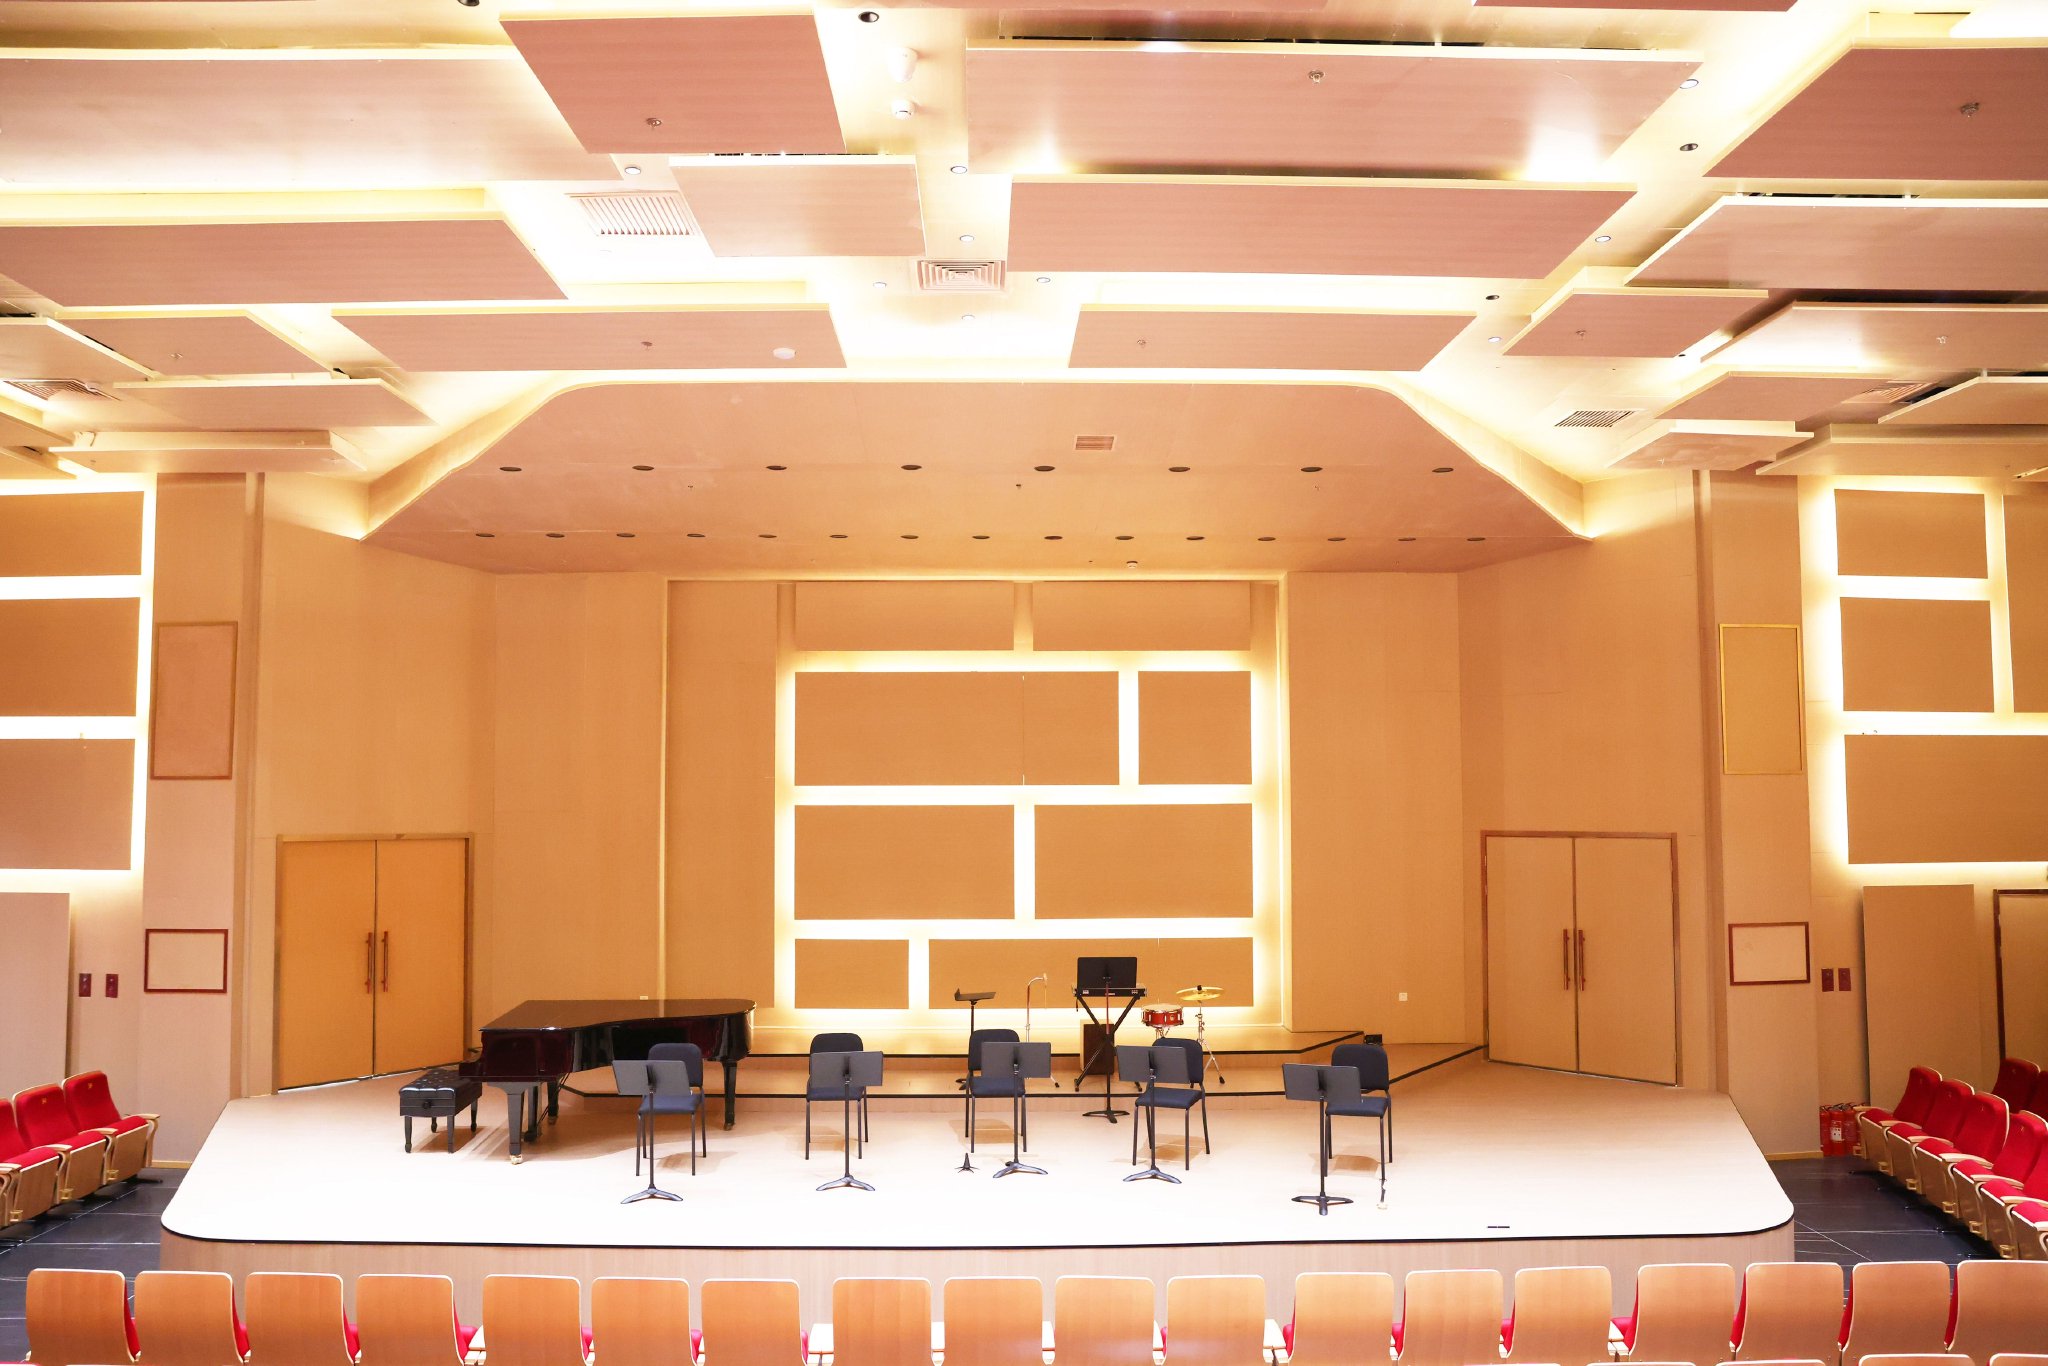 爱乐汇艺术空间“都市音乐厅”  图/爱乐汇交响乐团提供